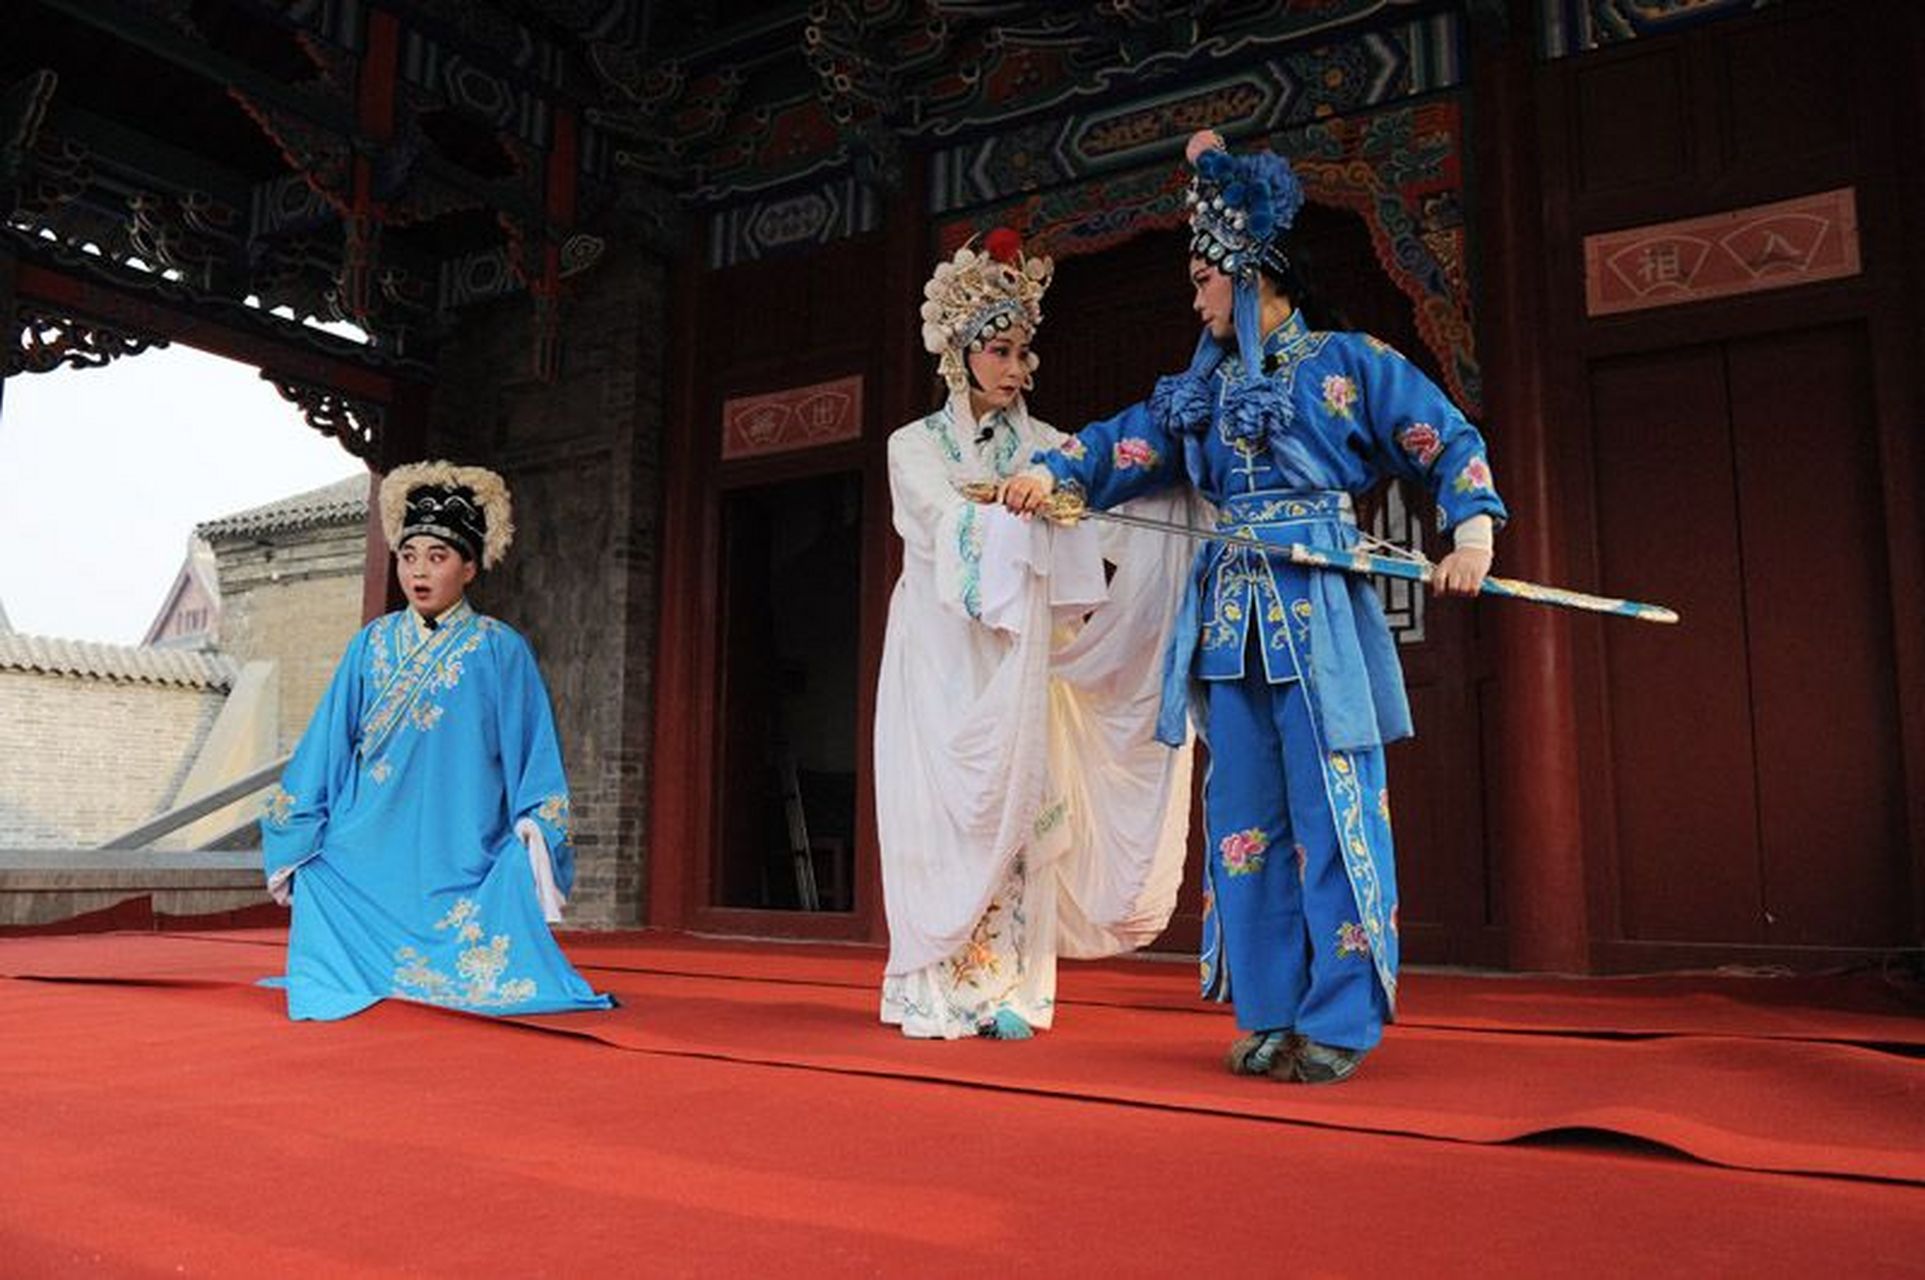 戏曲 提琴戏,原名花鼓戏,湖北省崇阳县地方传统戏剧,国家级非物质